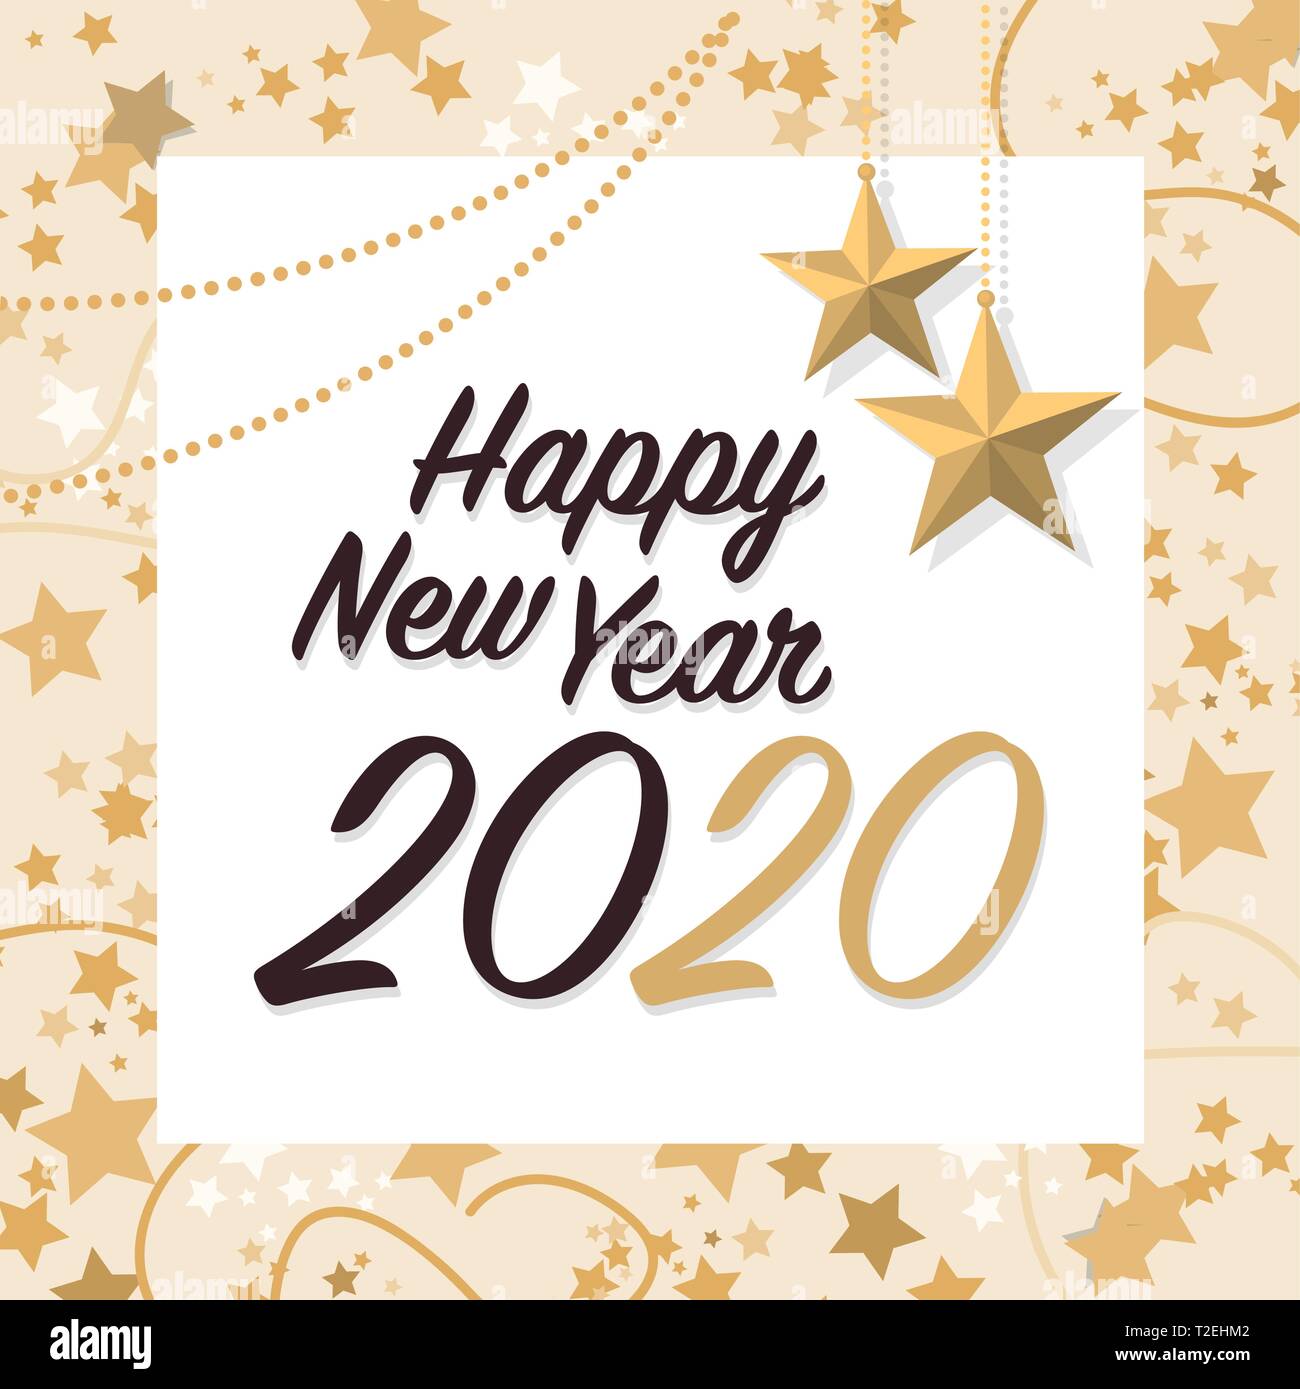 Frohes Neues Jahr 2020 mit den goldenen Sternen, social media Post und wünschen Karte Stock Vektor